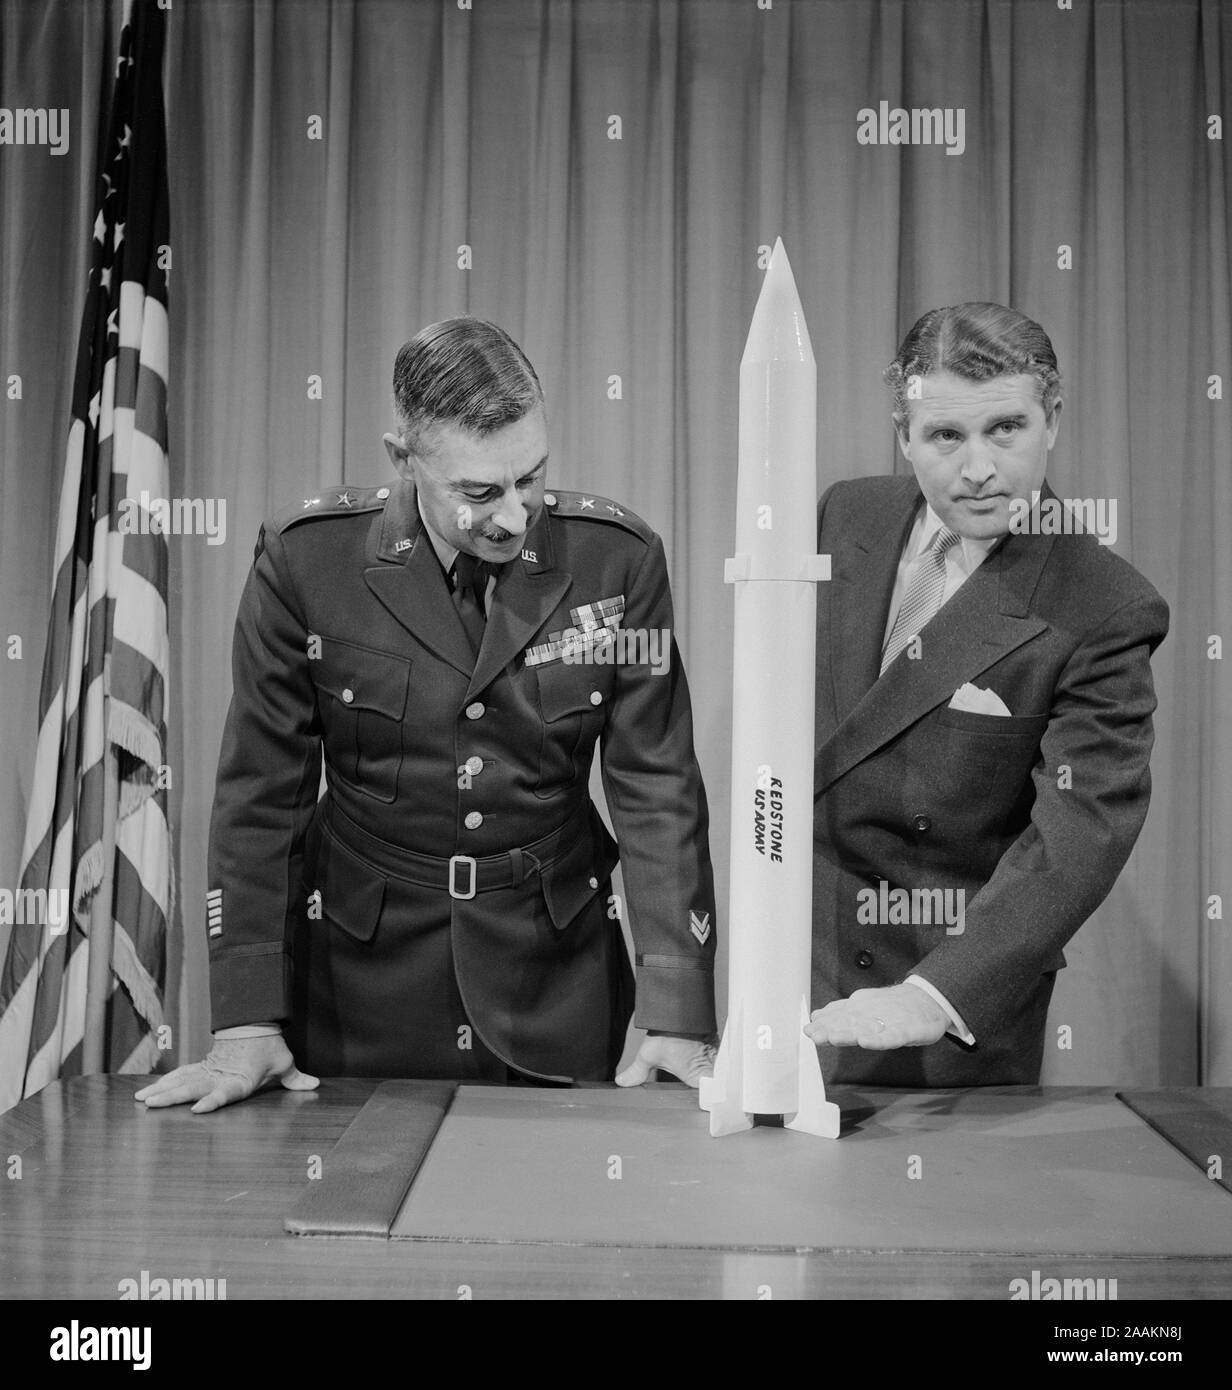 Le général de J.B. Medaris & Dr. Wernher von Braun avec des répliques de Missile Redstone, photo de Thomas J. O'Halloran, Janvier 20, 1956 Banque D'Images